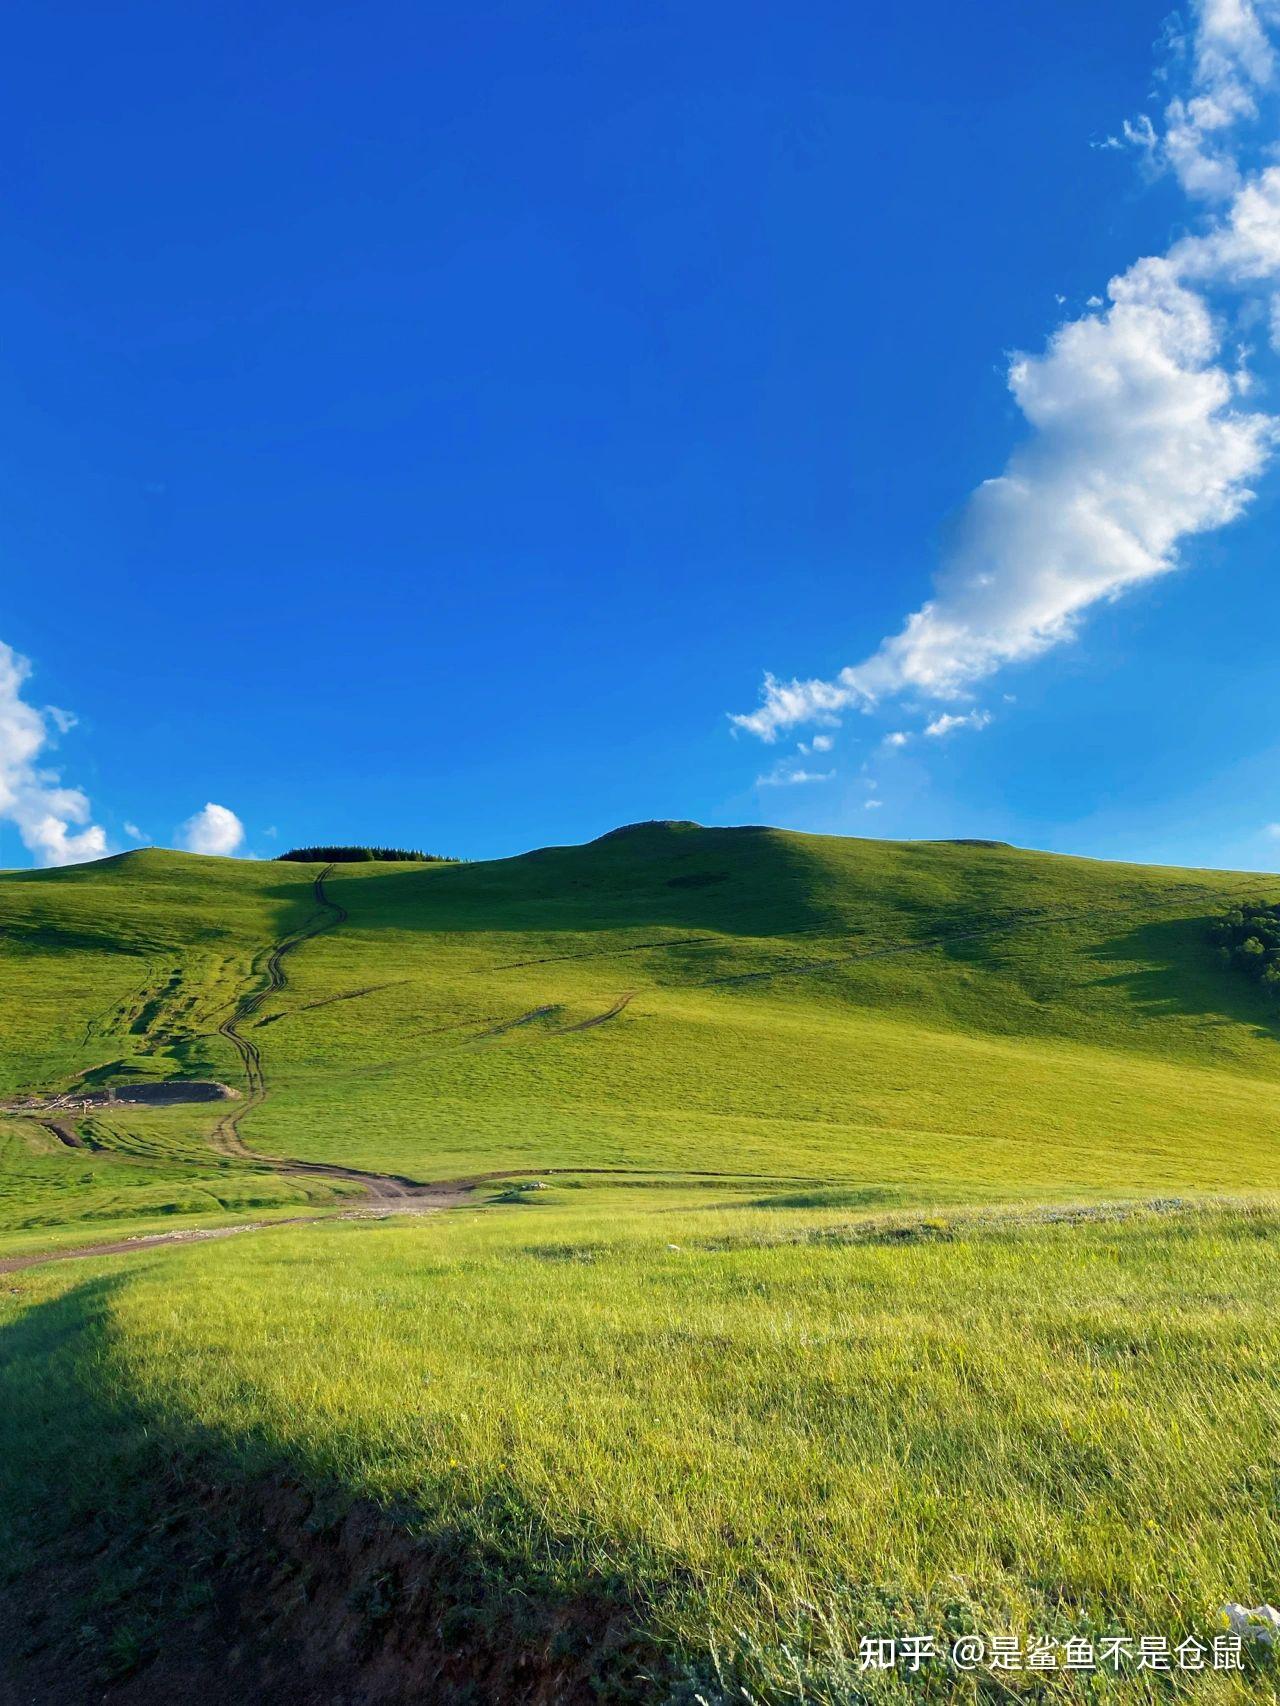 2023内蒙古旅游攻略，内蒙古呼和浩特自由行攻略心得分享——内蒙古必玩景点路线推荐+避坑指南！